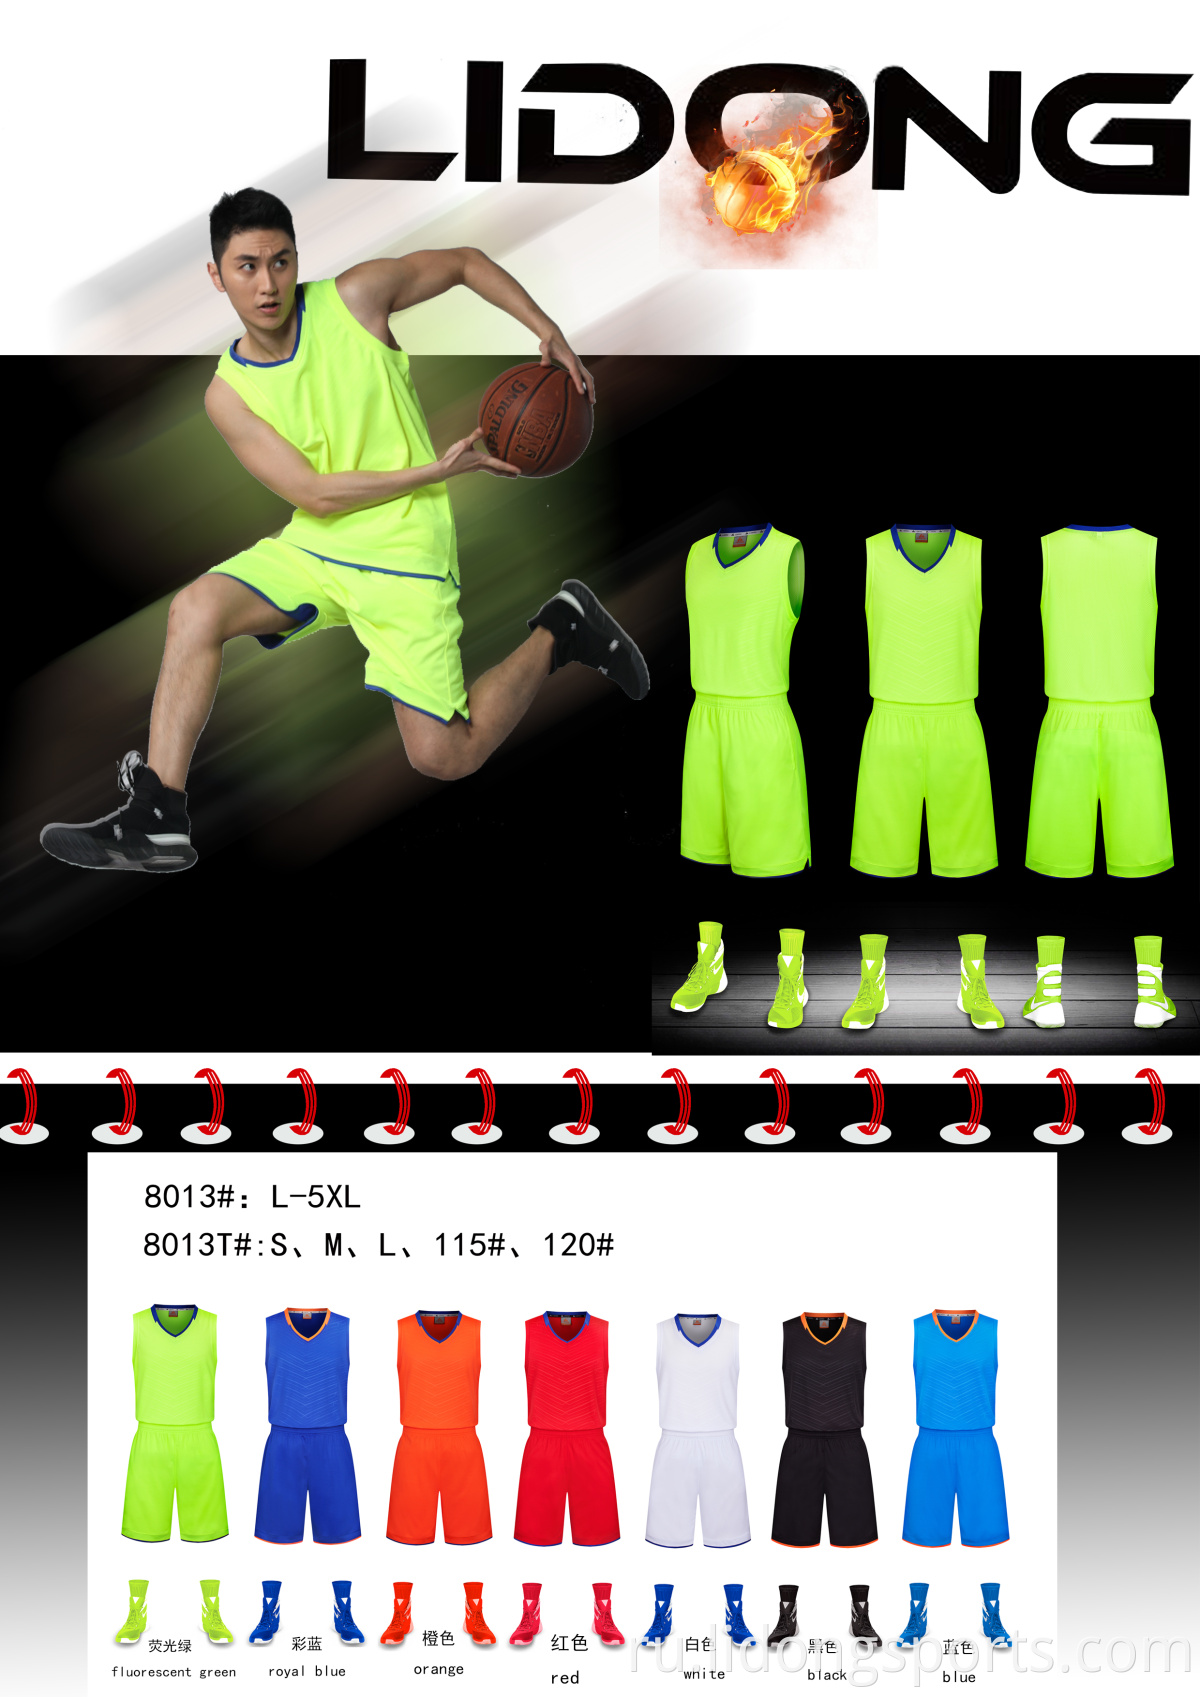 Последние новые баскетбольные майки индивидуально дизайн вашей собственной баскетбольной формы, женская баскетбольная форма